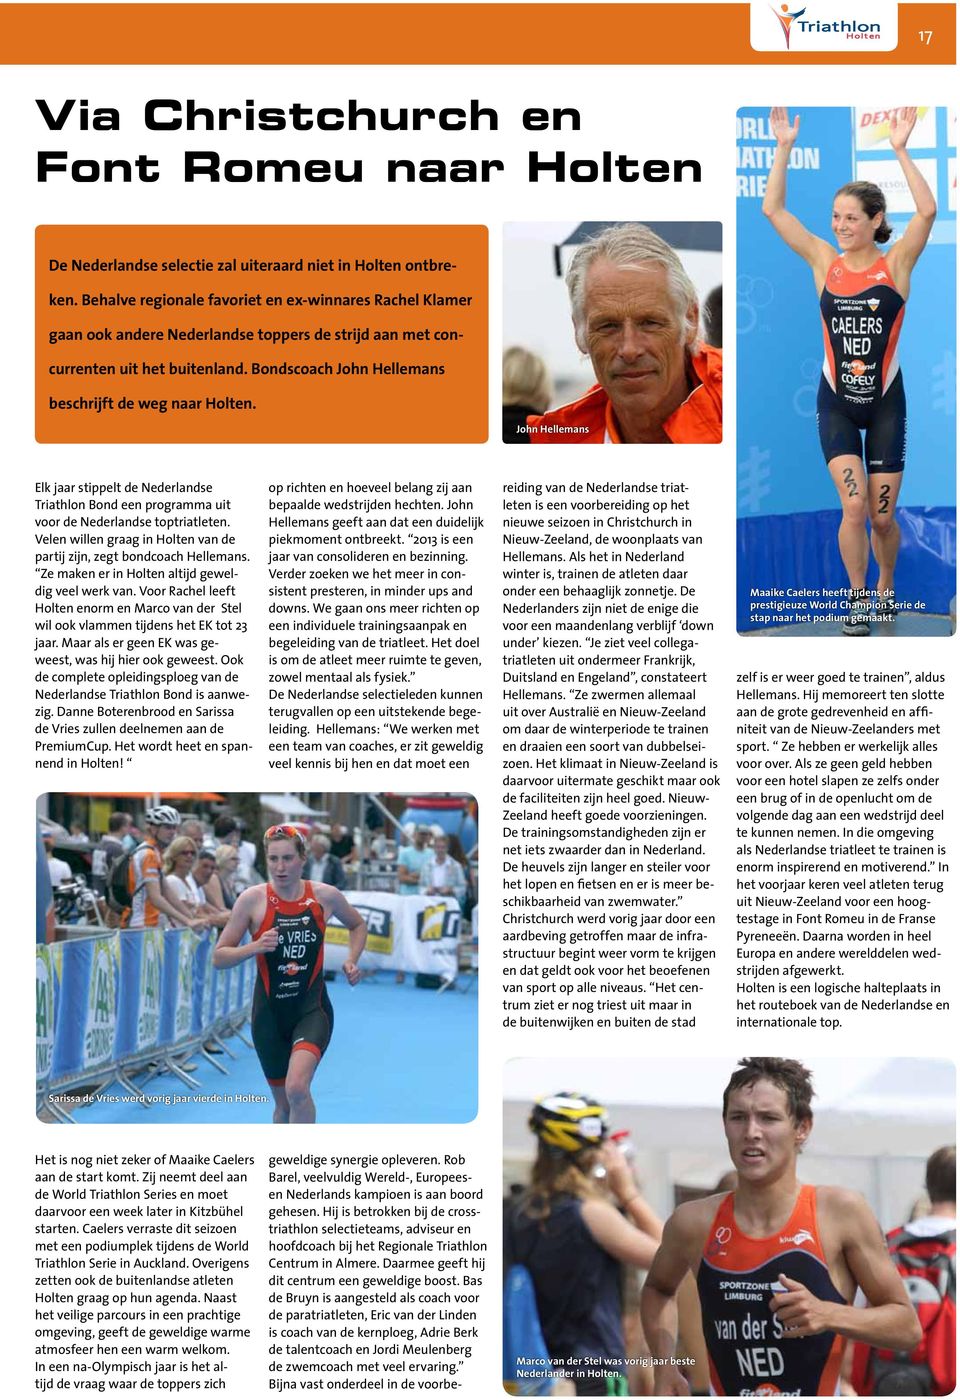 John Hellemans Elk jaar stippelt de Nederlandse Triathlon Bond een programma uit voor de Nederlandse toptriatleten. Velen willen graag in Holten van de partij zijn, zegt bondcoach Hellemans.